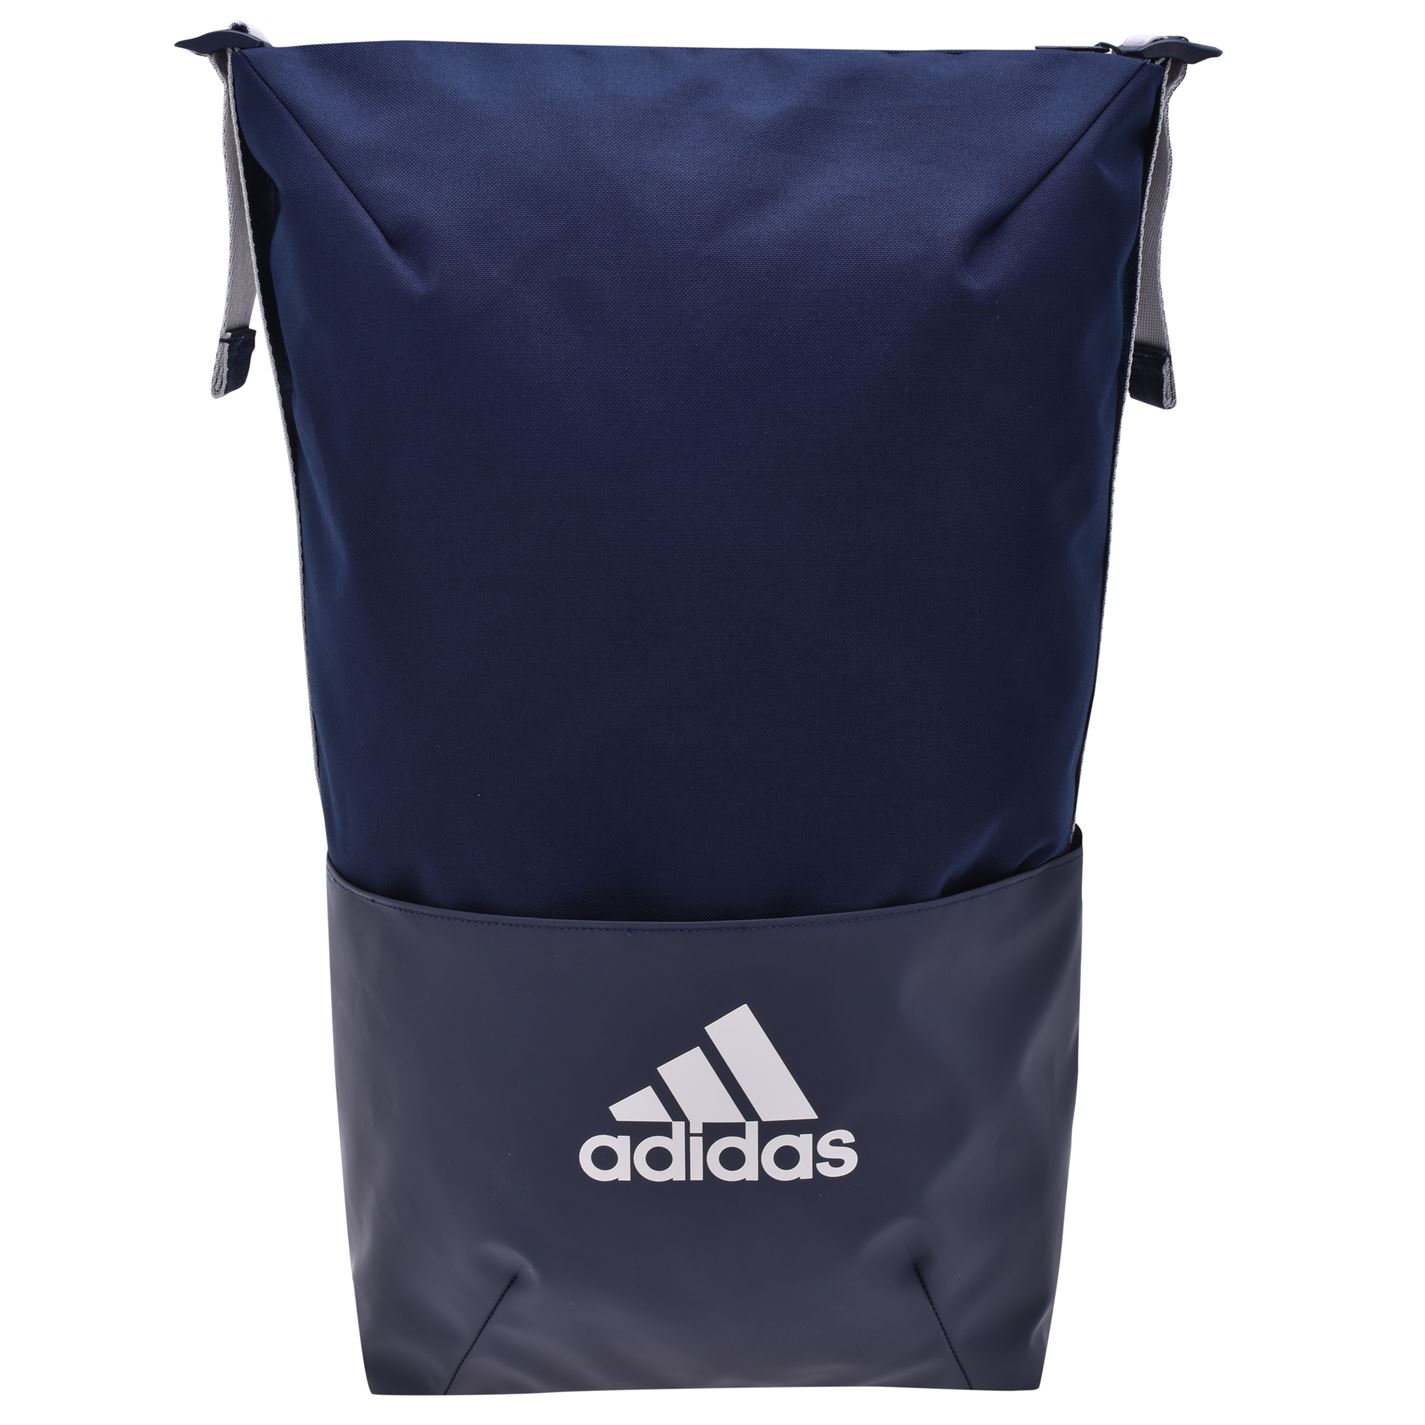 Adidas Z.N.E Core Backpack